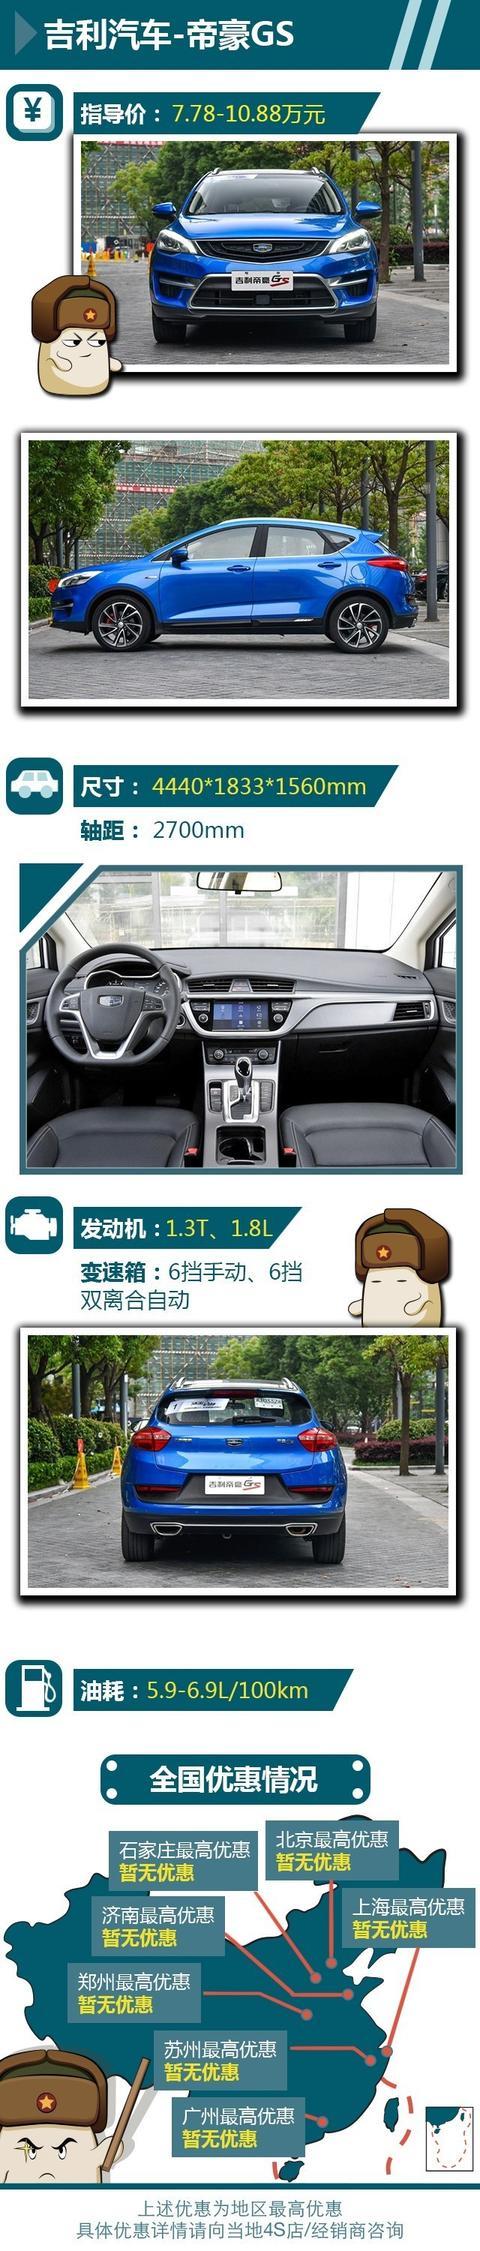 安全最重要 这三款入门级中国品牌SUV不要错过